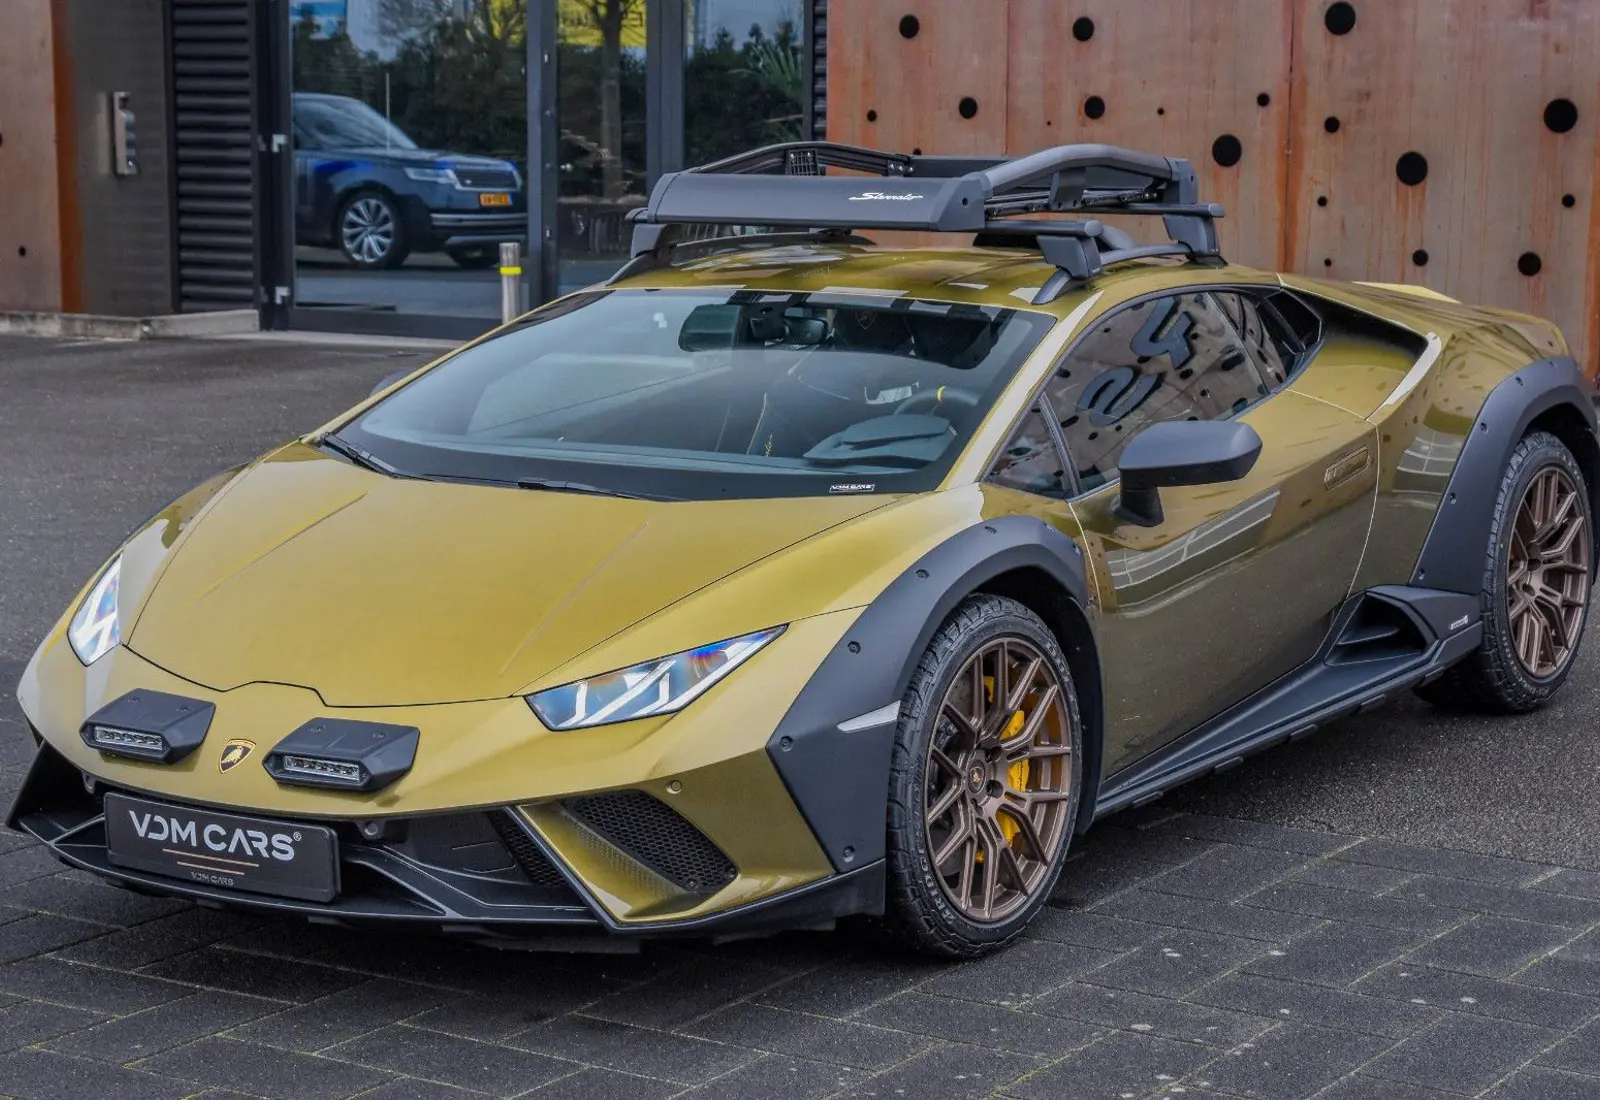 Lamborghini Huracán Sterrato * 1/1499 * CARBON SEATS * ROOF RACK *  - 49507